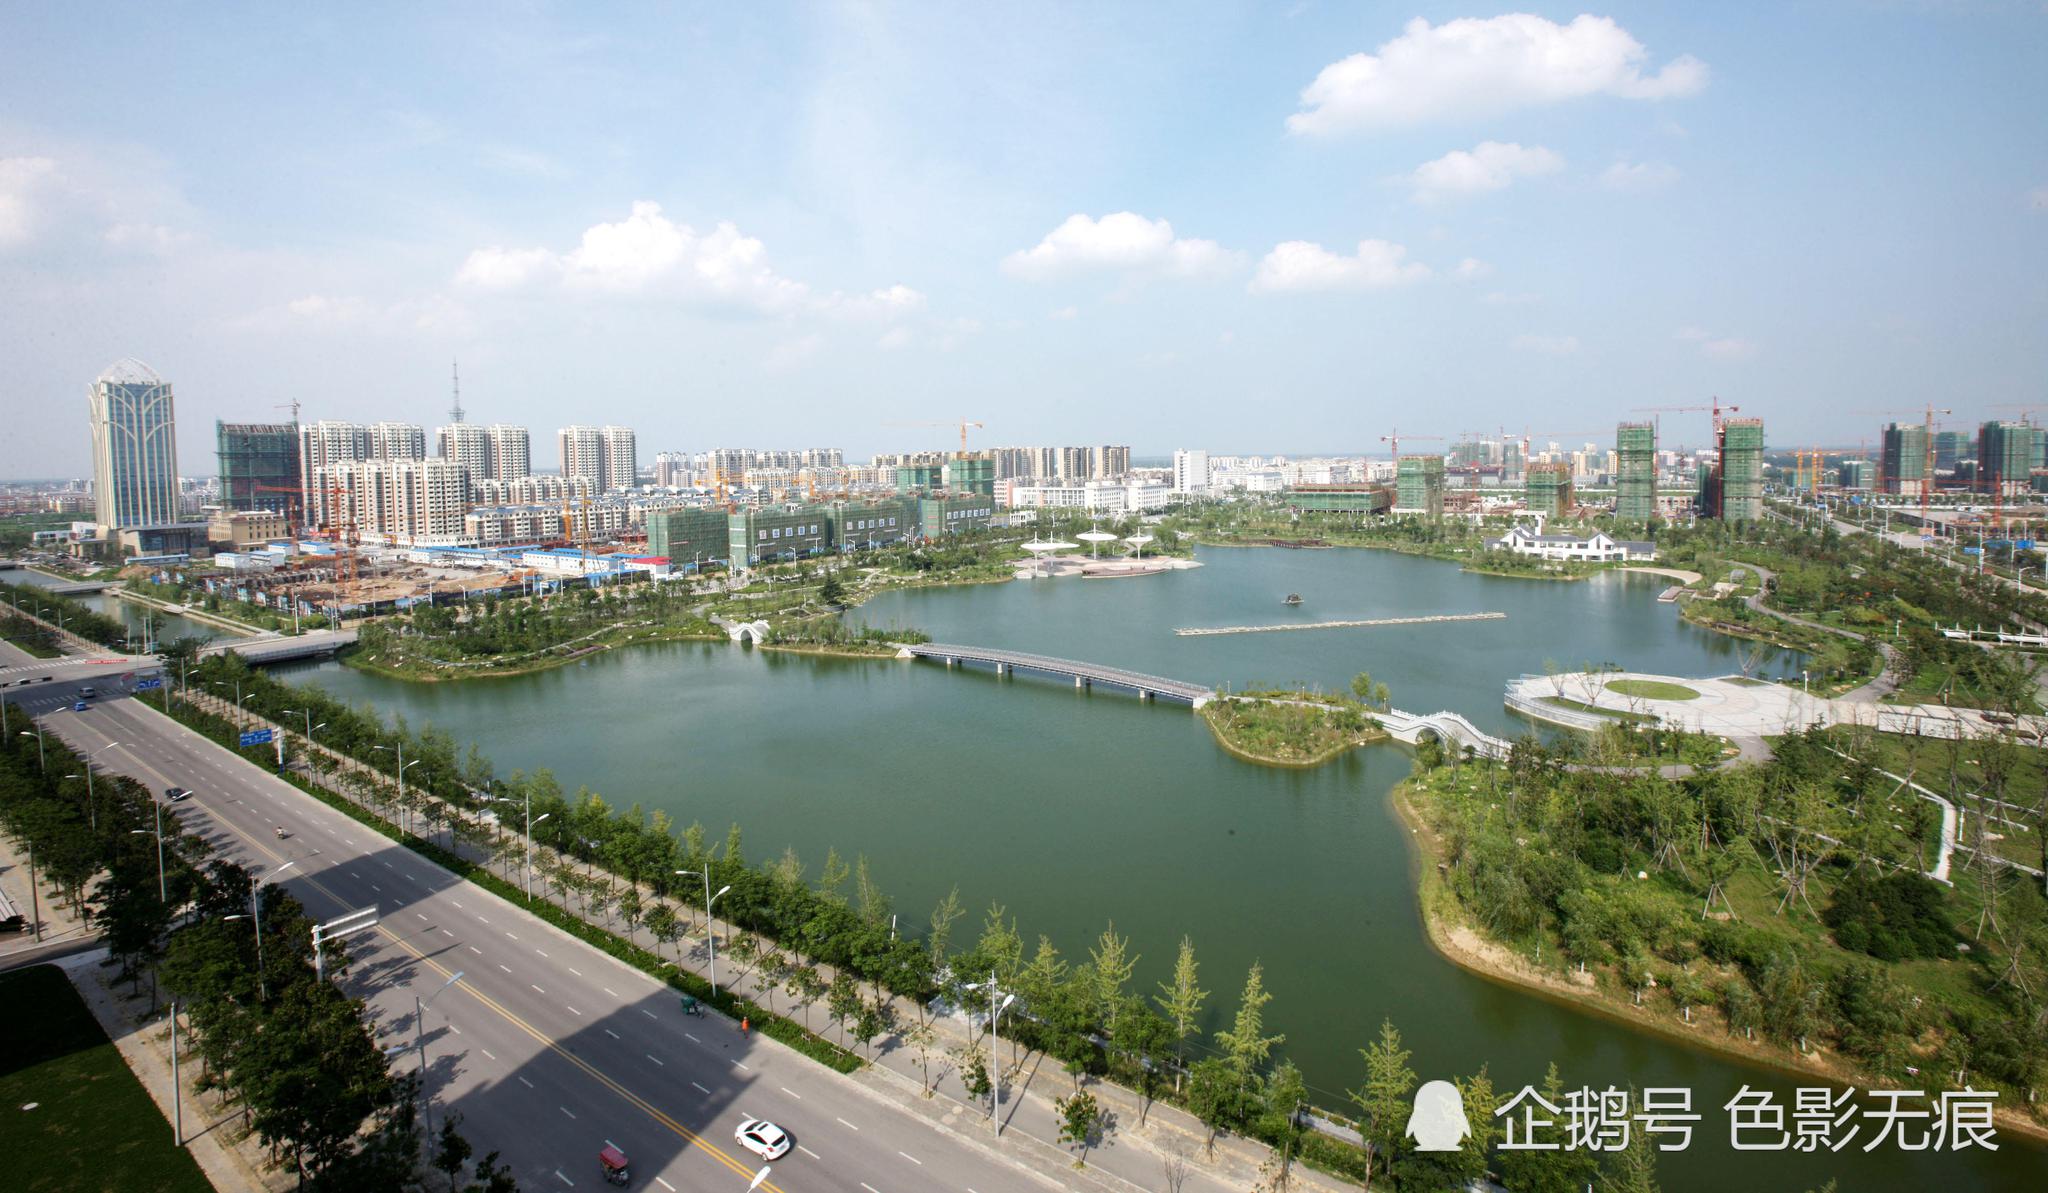 中国最要面子的县城:房价1.2万,工资2千,牛群曾